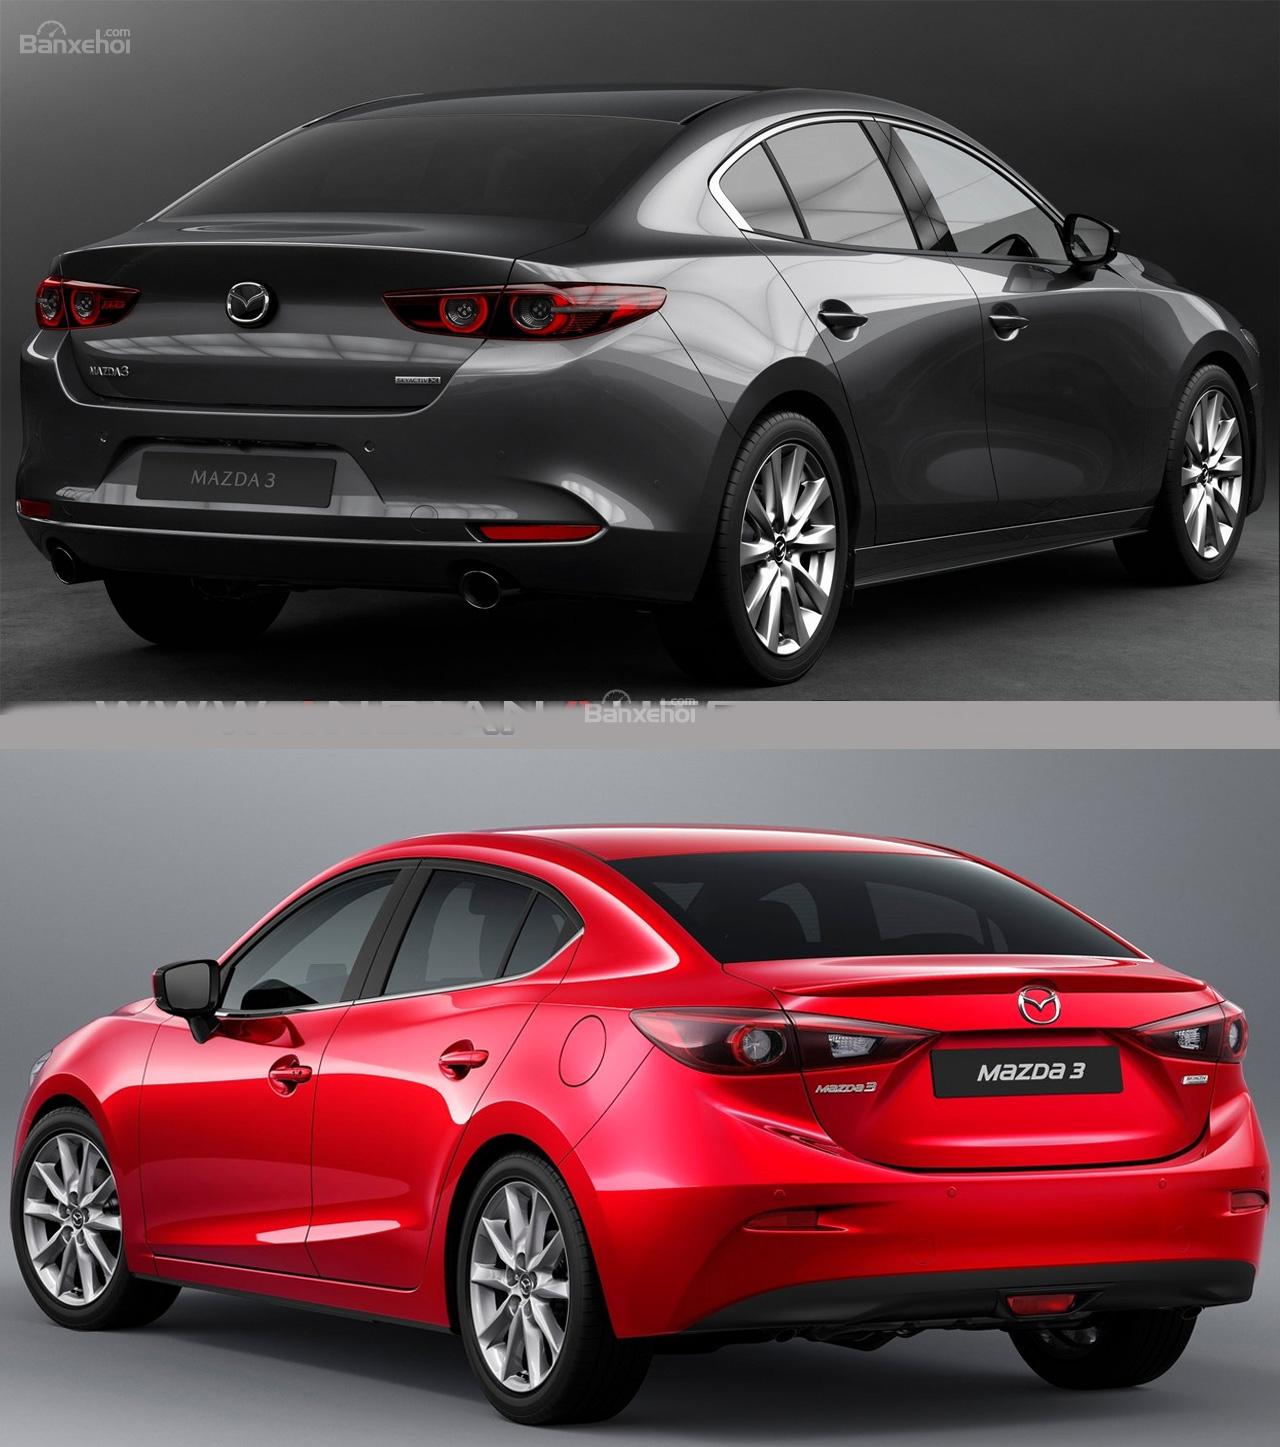 So sánh Mazda 3 2019 thế hệ mới và cũ qua hình ảnh trực quan - Ảnh 5.